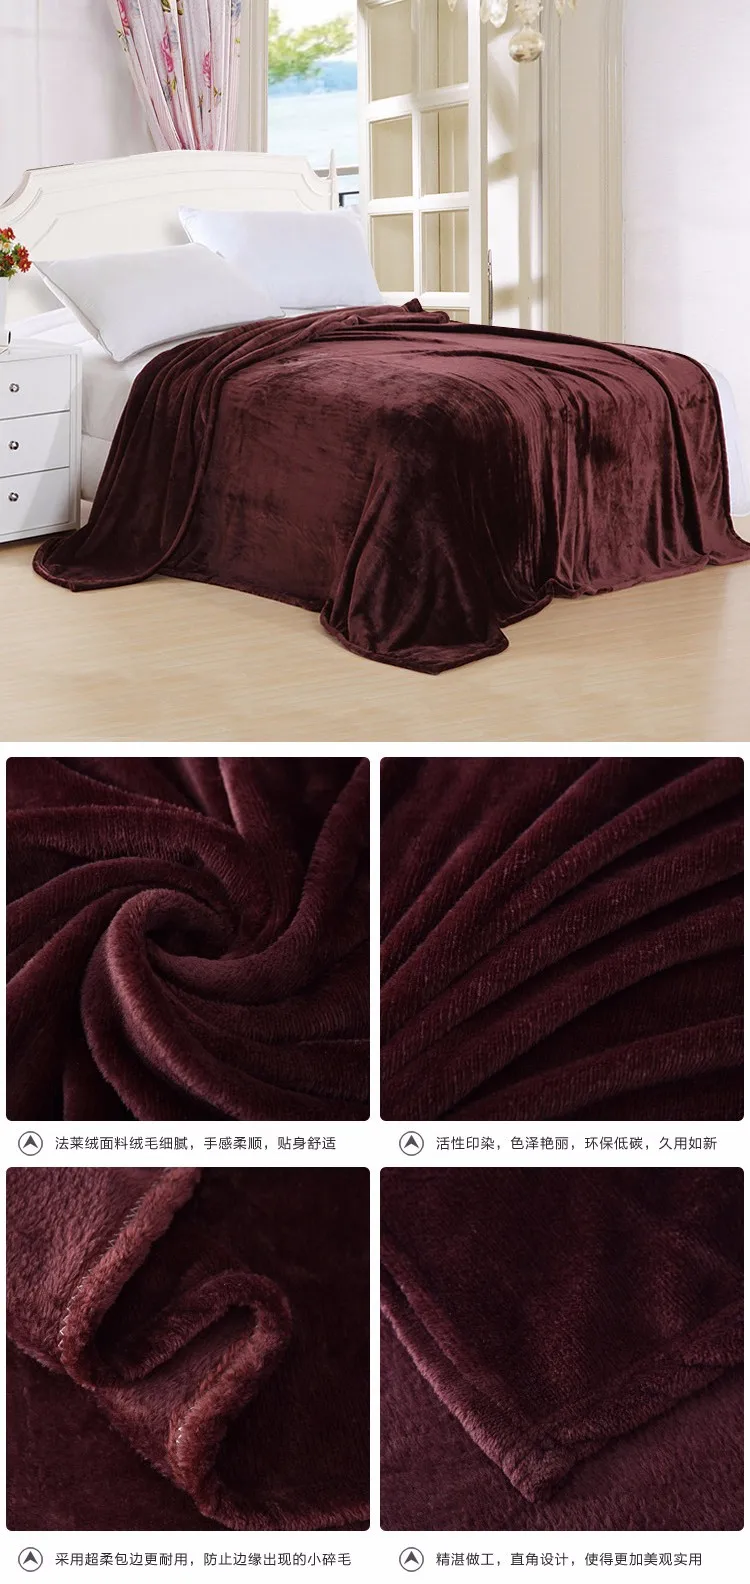 Высокое качество домашний текстиль фланелевое одеяло розовый плед супер теплое мягкое одеяло s плед на диван/кровать/Самолет путешествия